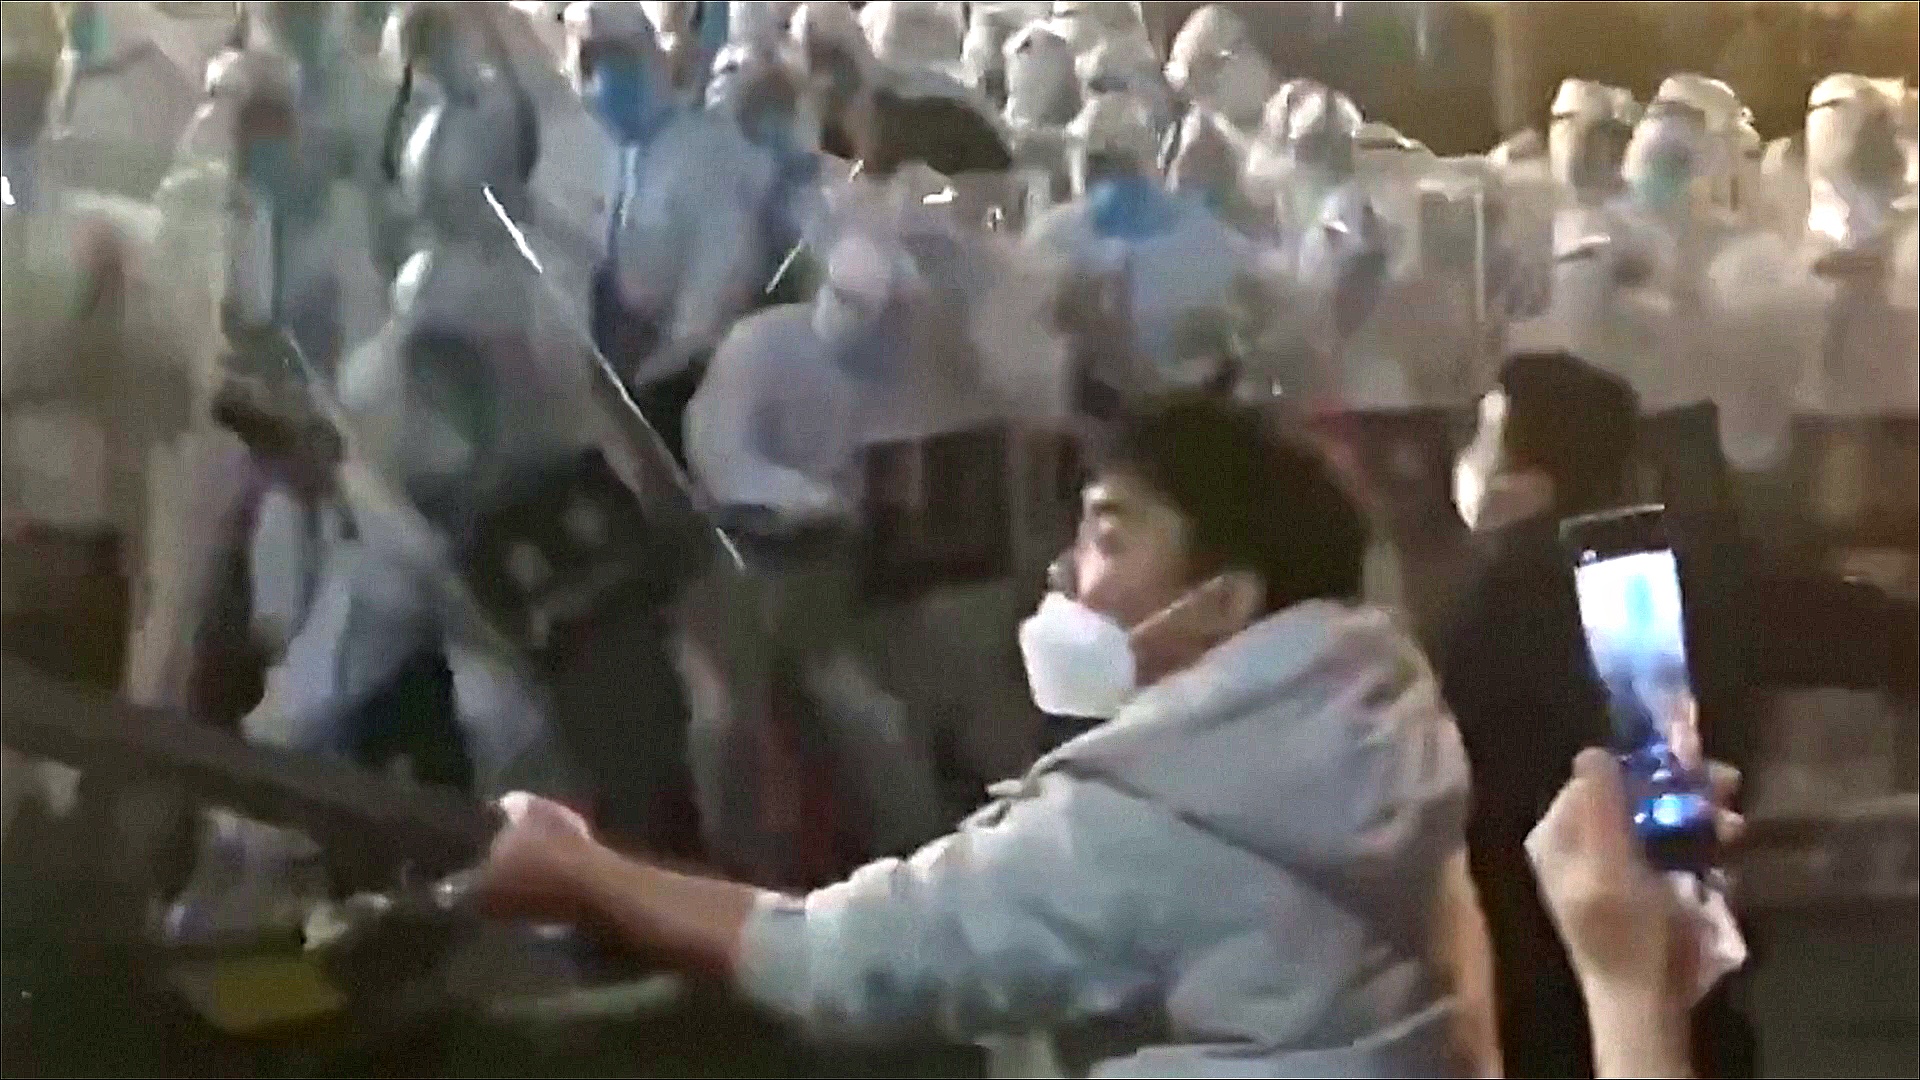 Сотни рабочих завода Foxconn в Китае вступили в стычки с людьми в защитных костюмах